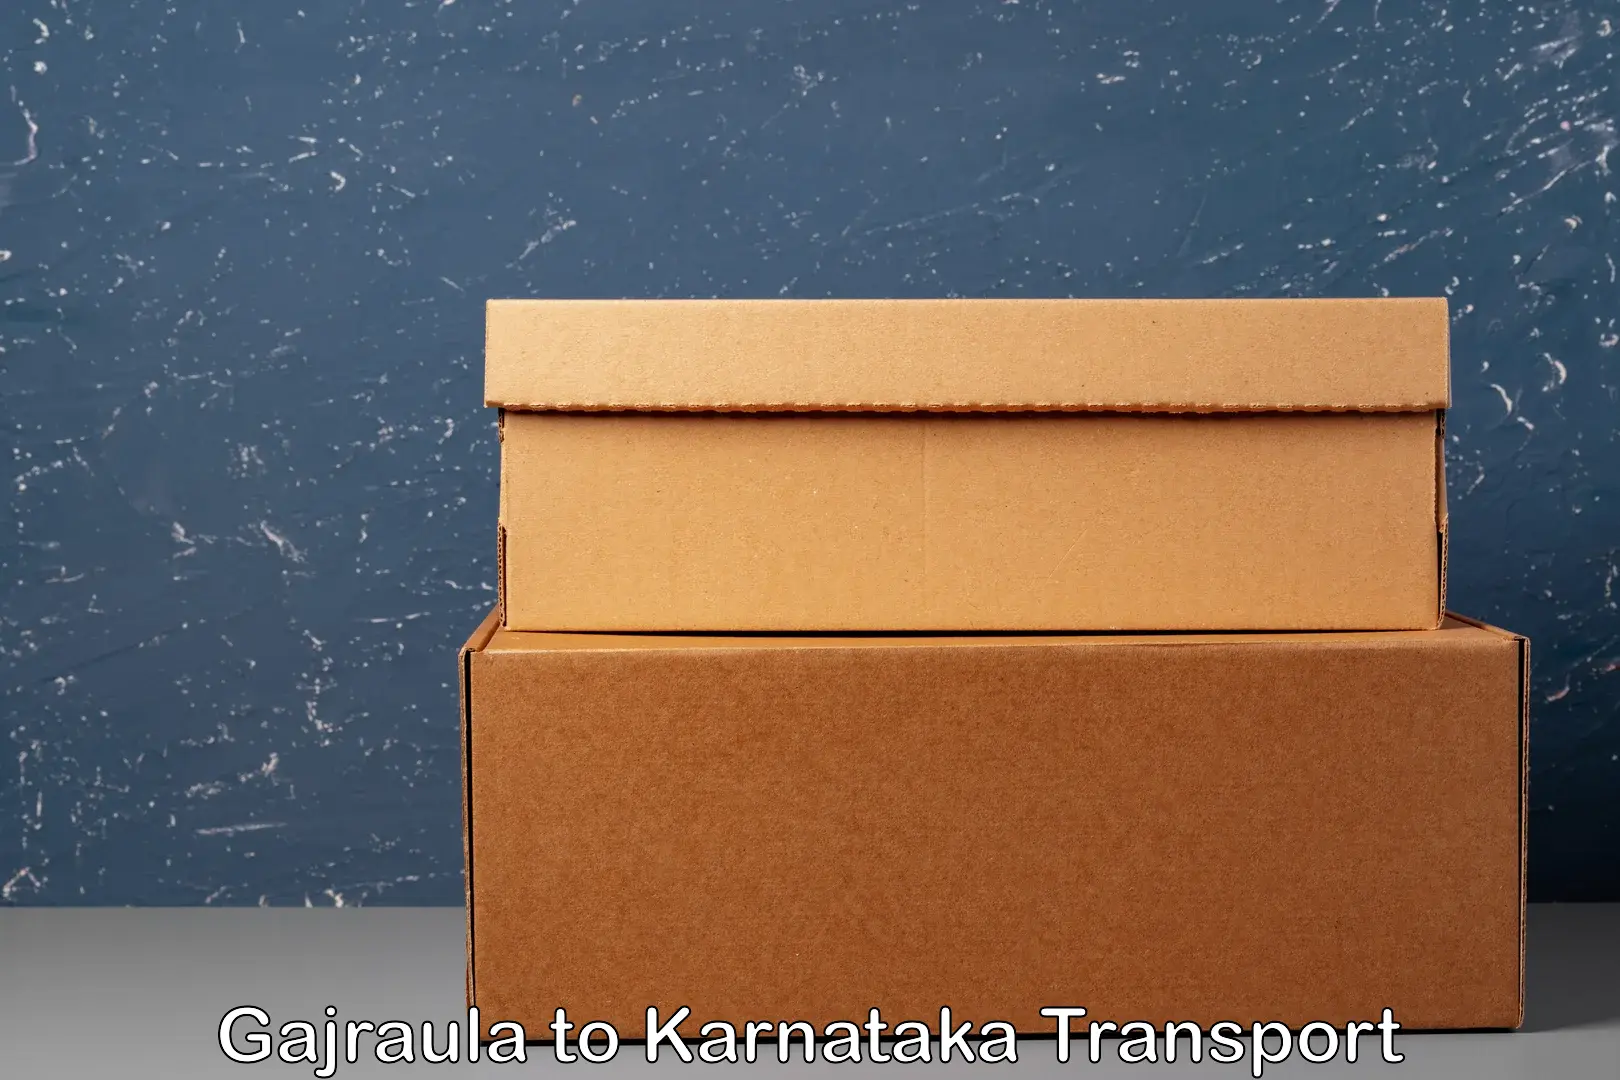 Bike shipping service in Gajraula to Karnataka